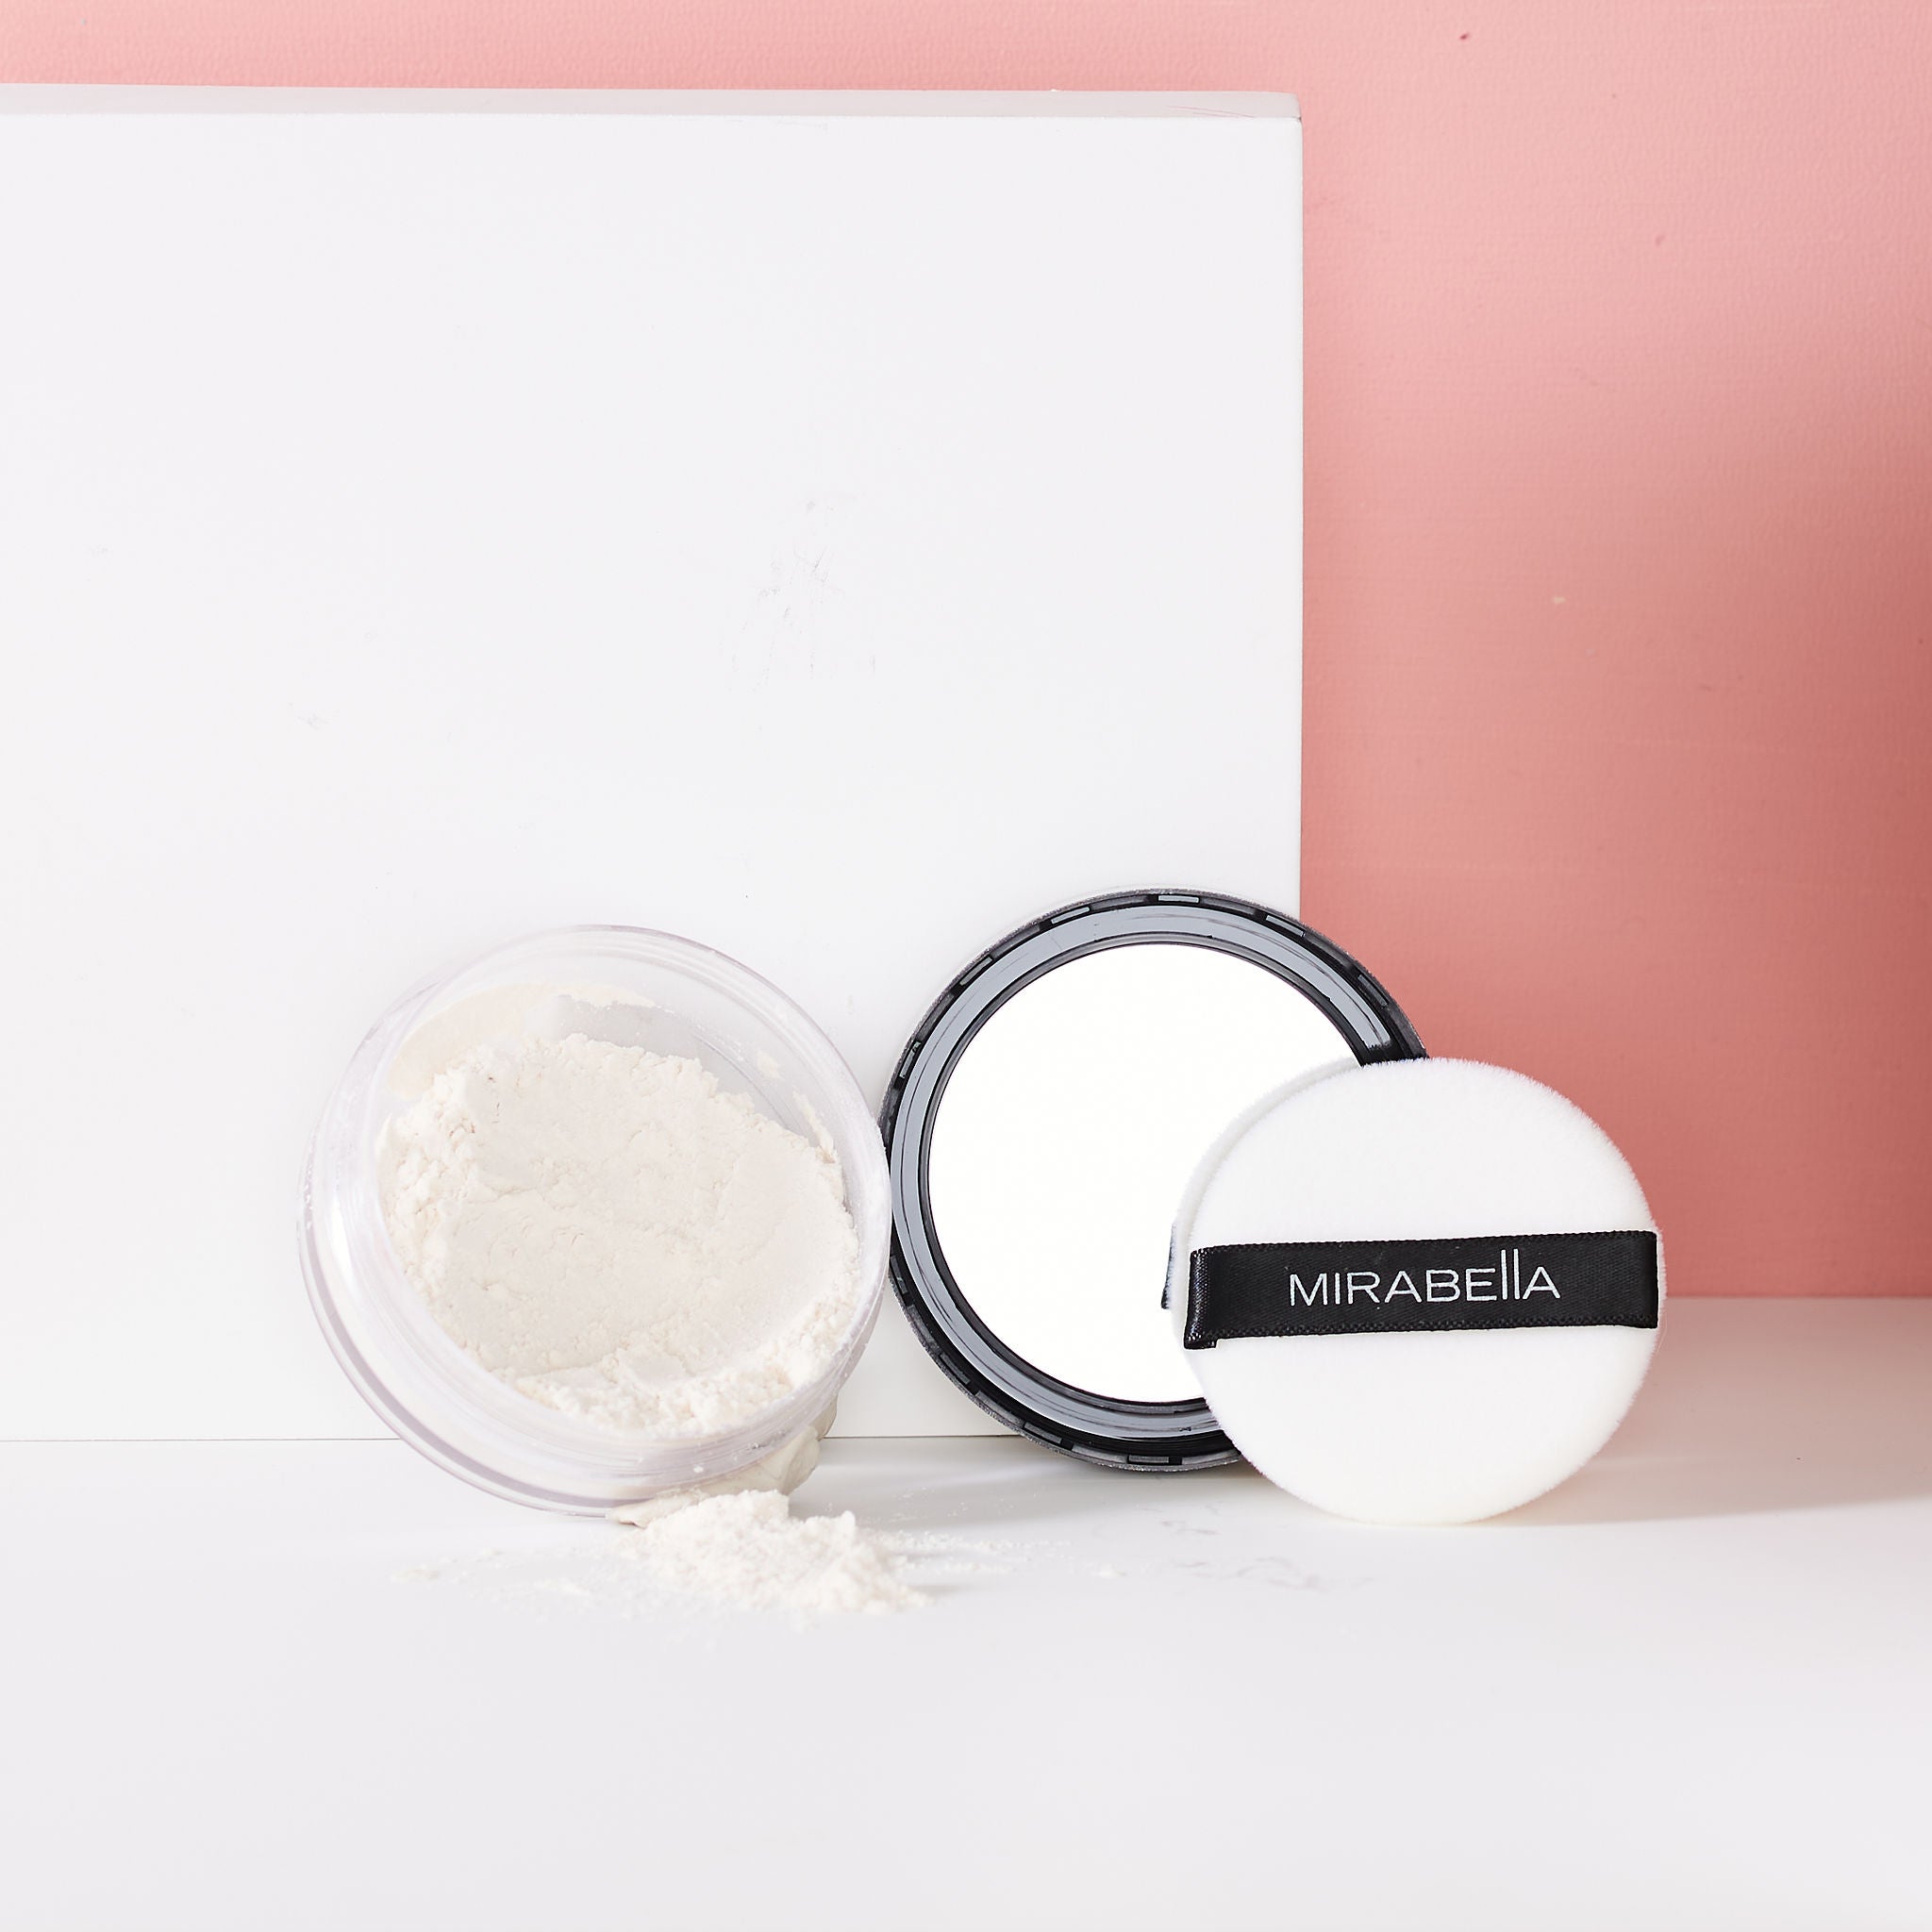 Mirabella Perfecting Powder - Click to Buy!